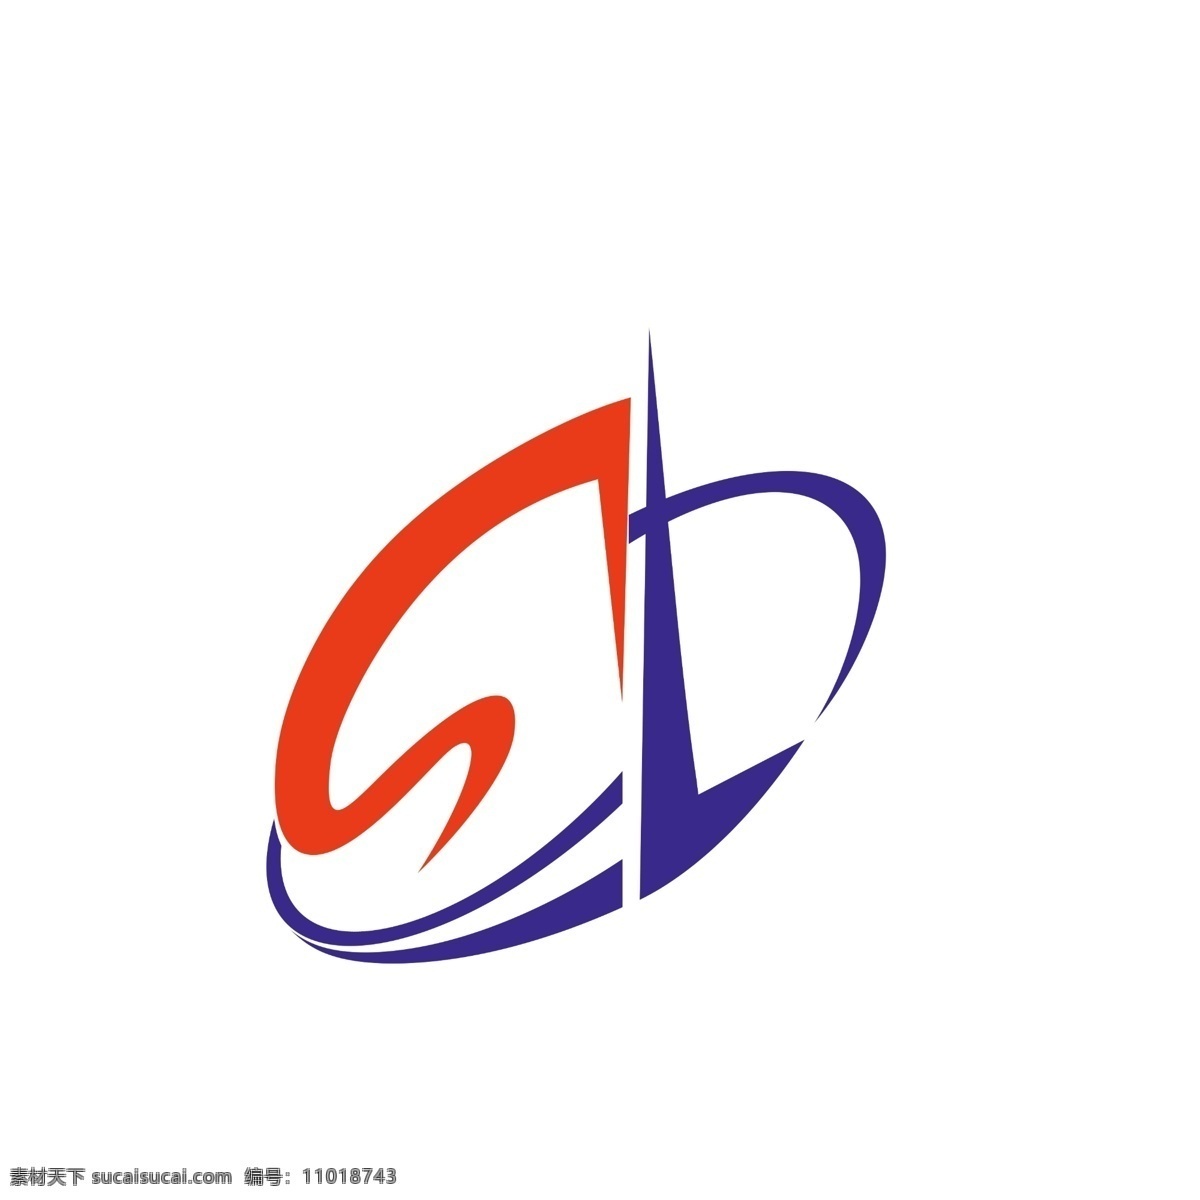 logo 企业logo 电子 科技 公司标志